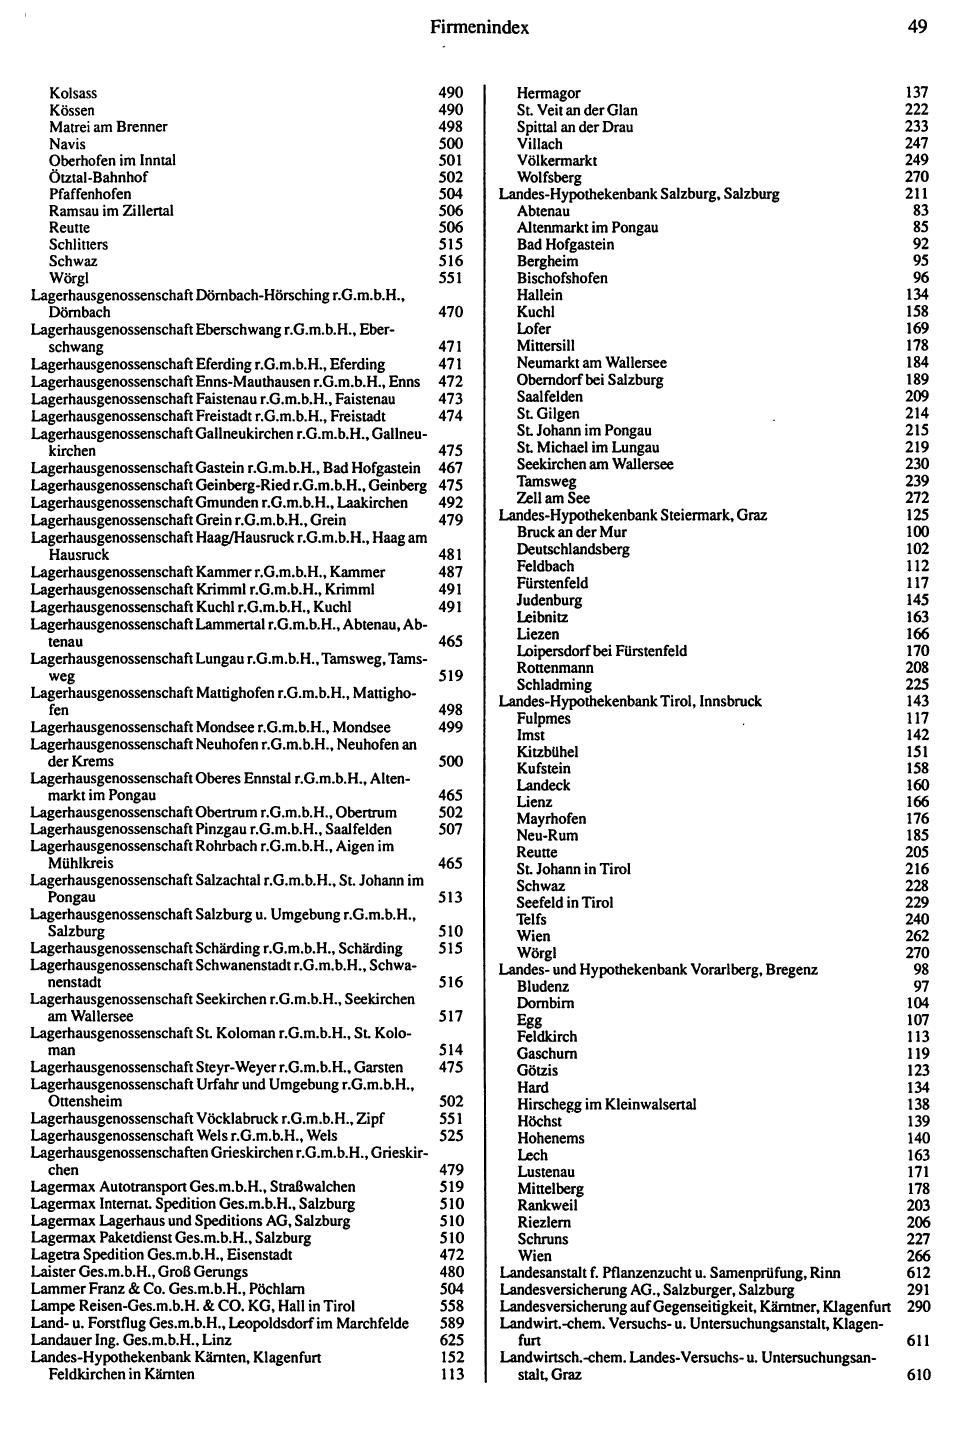 Inhaltsverzeichnis Compass 1992 - Seite 329